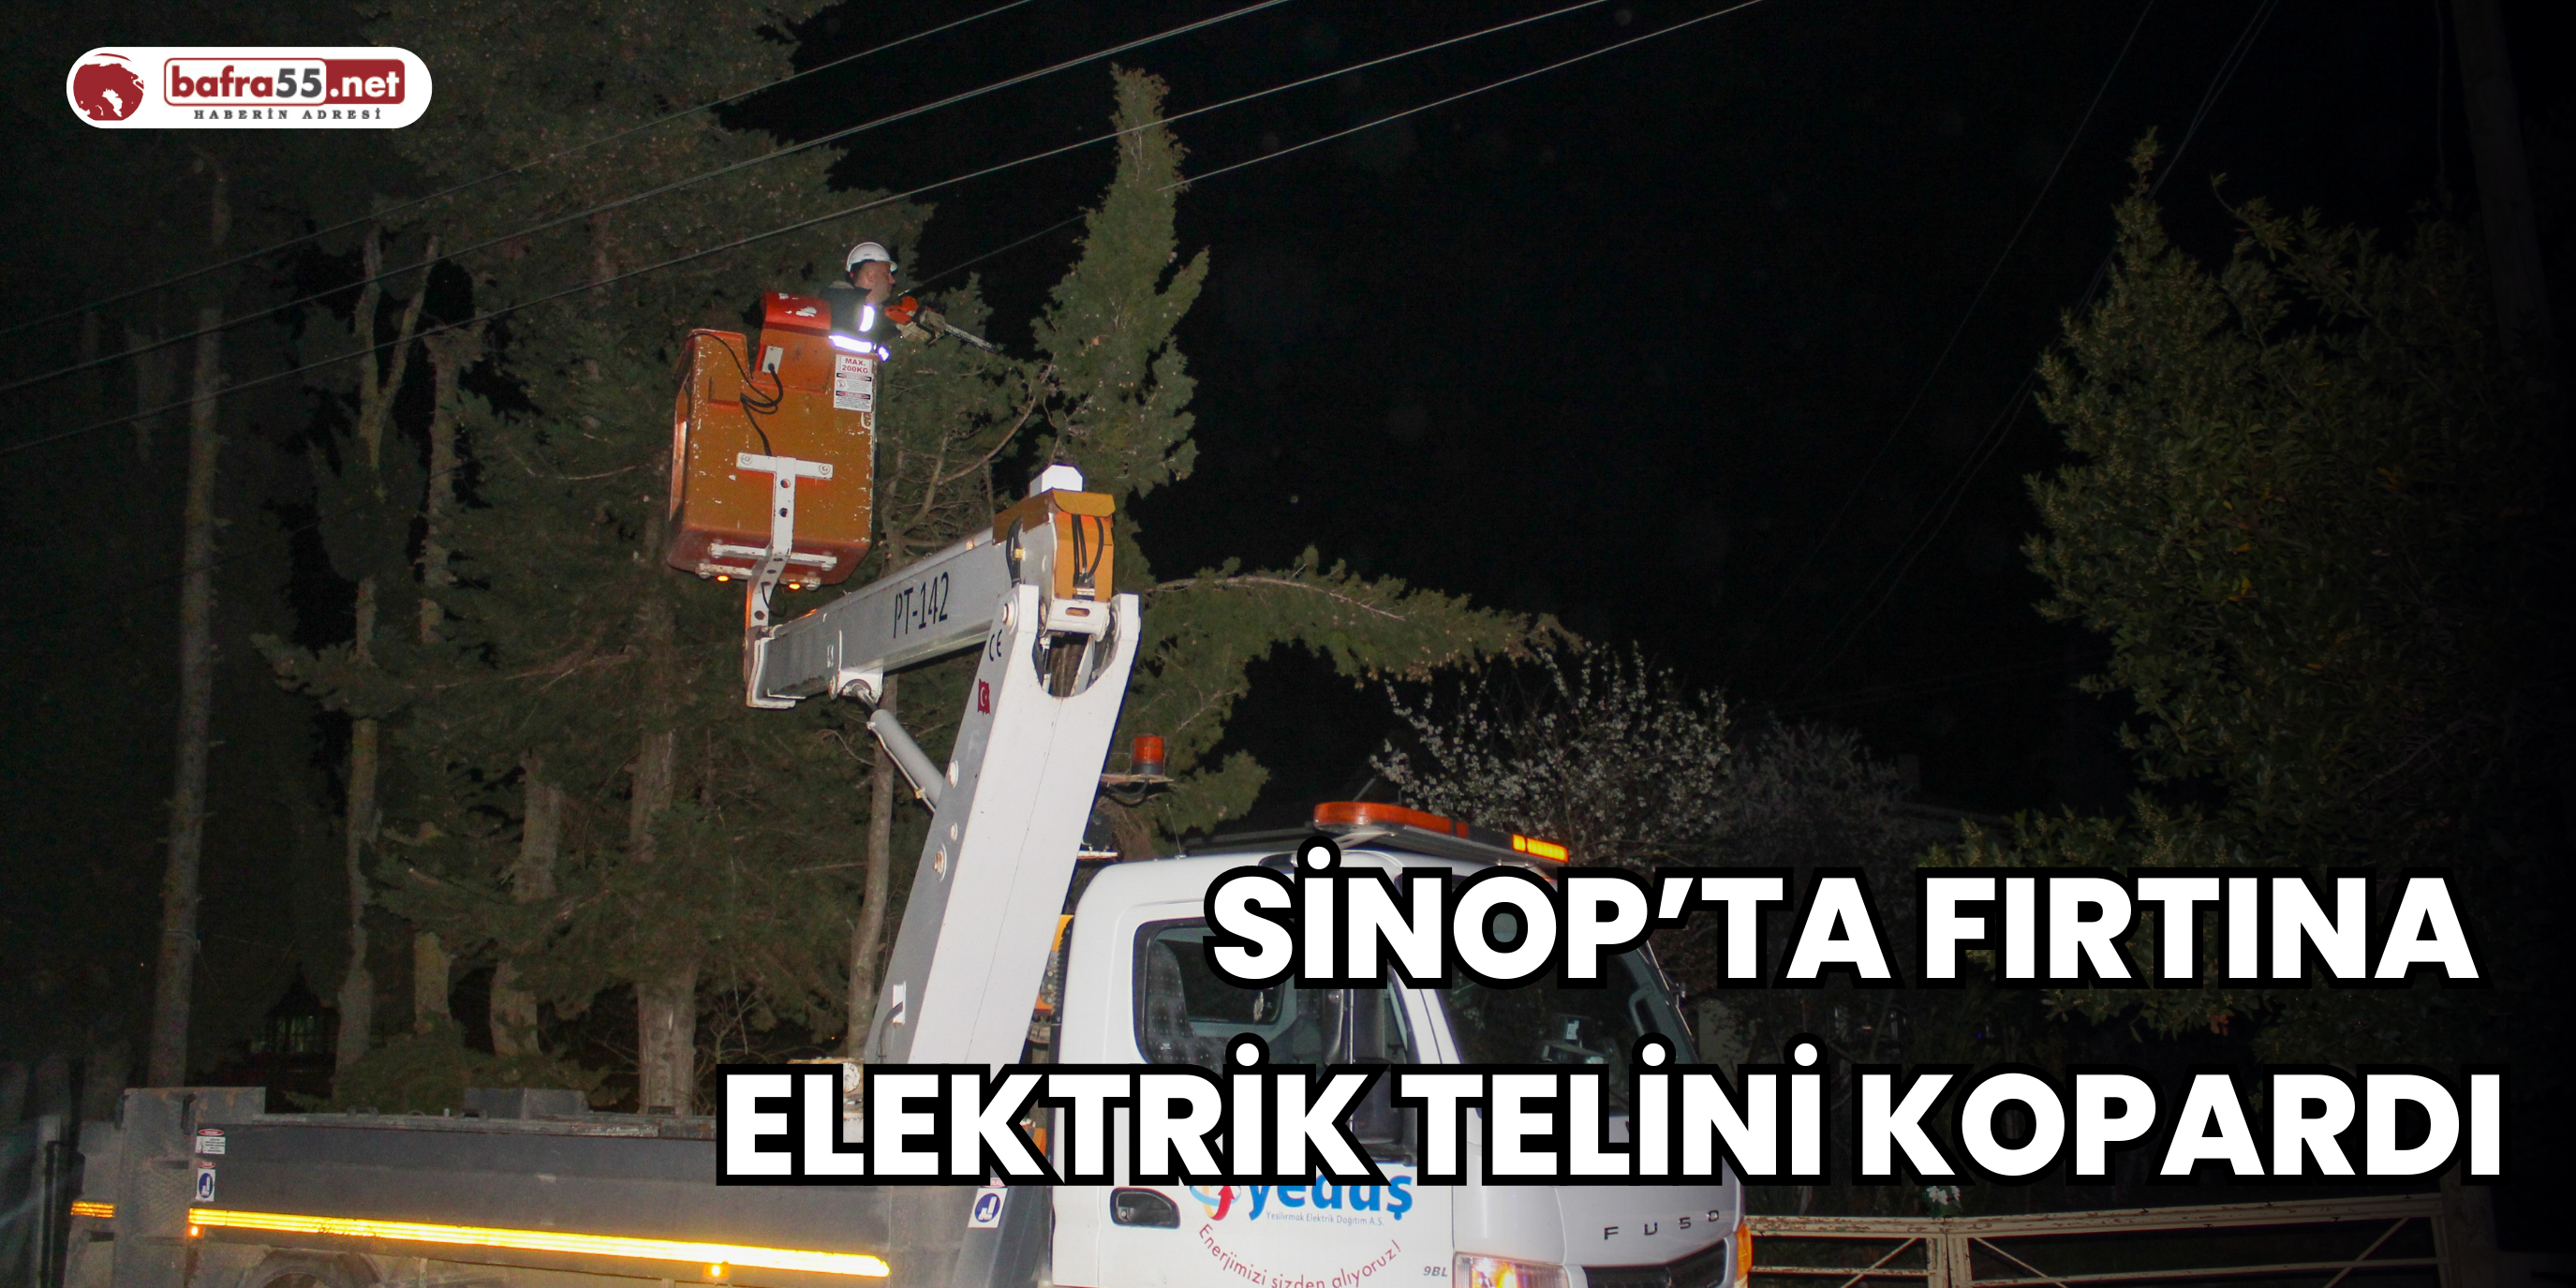 Sinop’ta Fırtına Elektrik Telini Kopardı